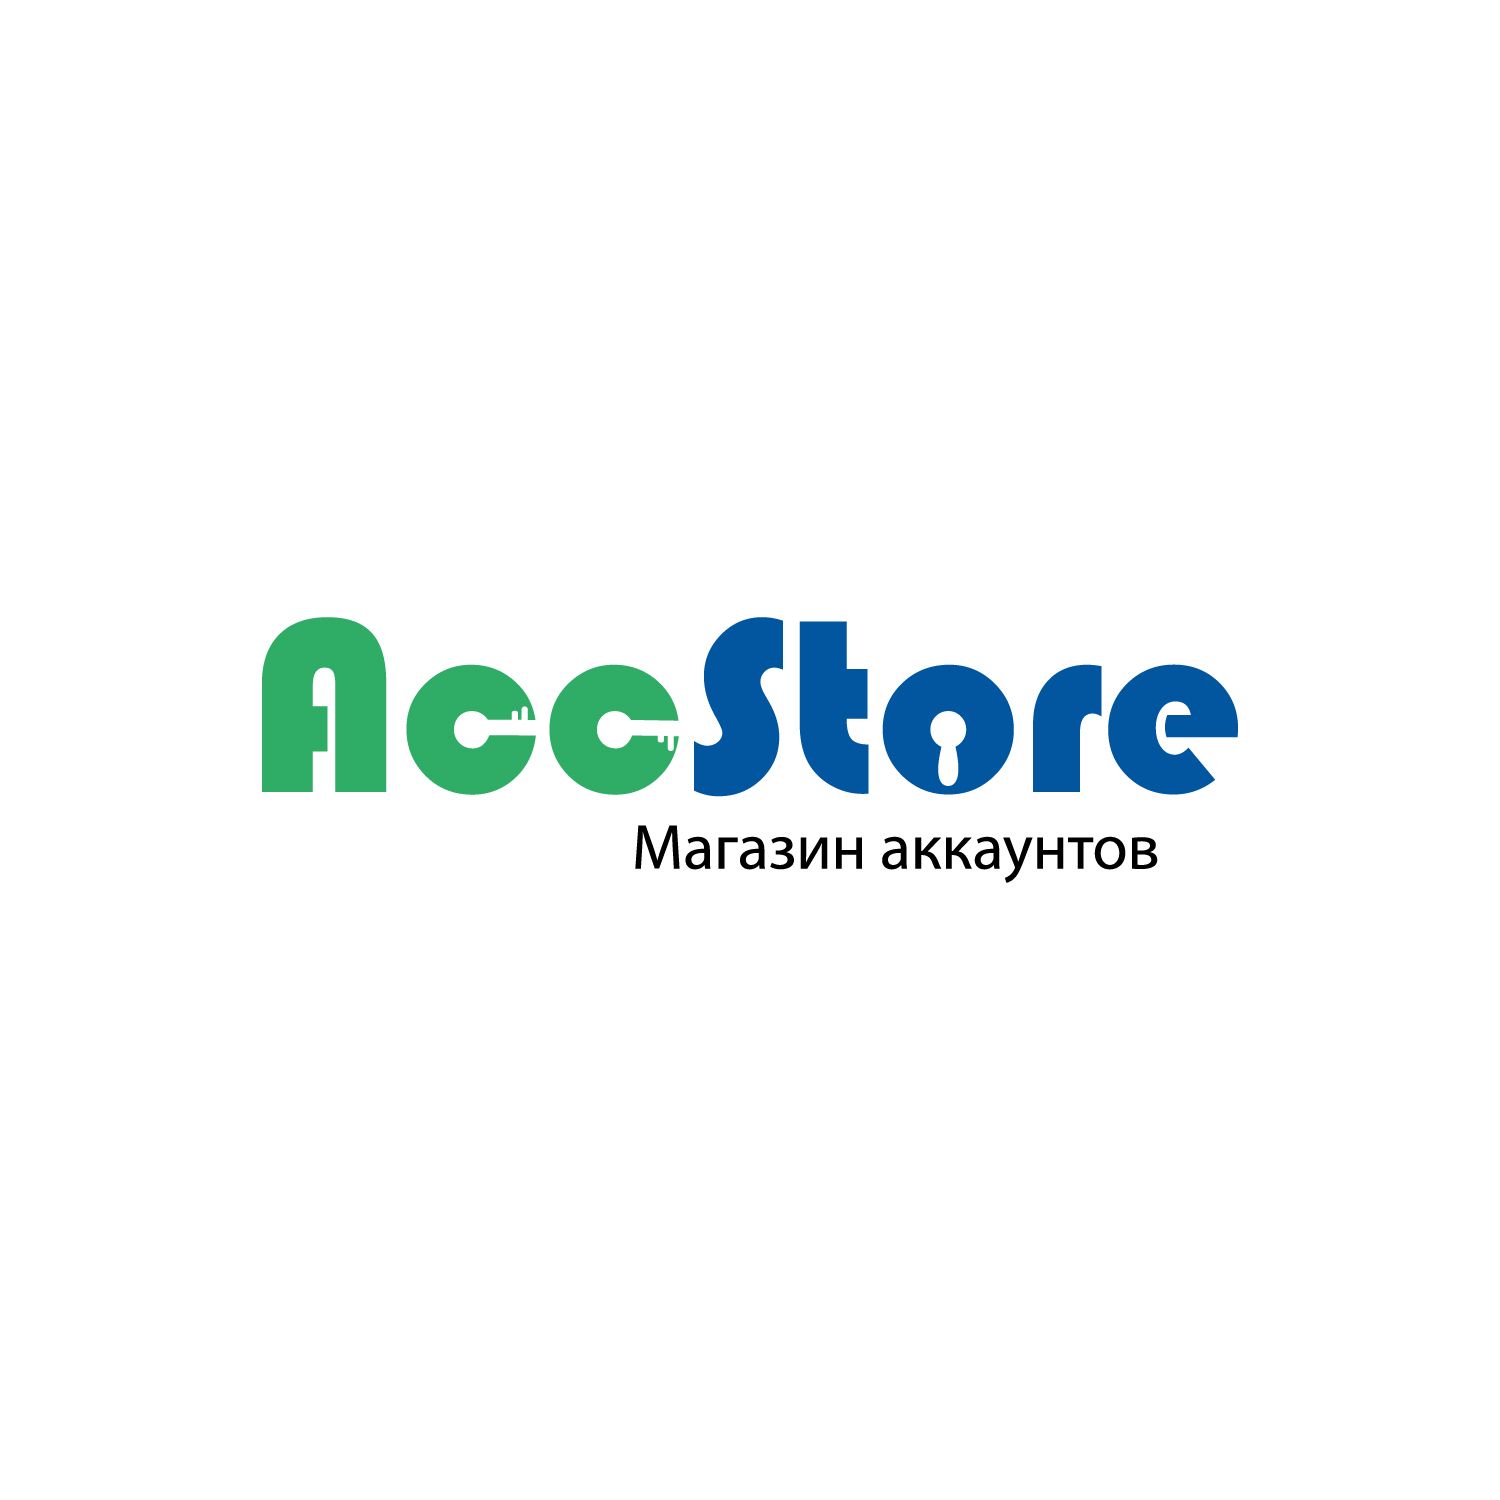 Логотип для магазина аккаунтов - дизайнер Nikalaus